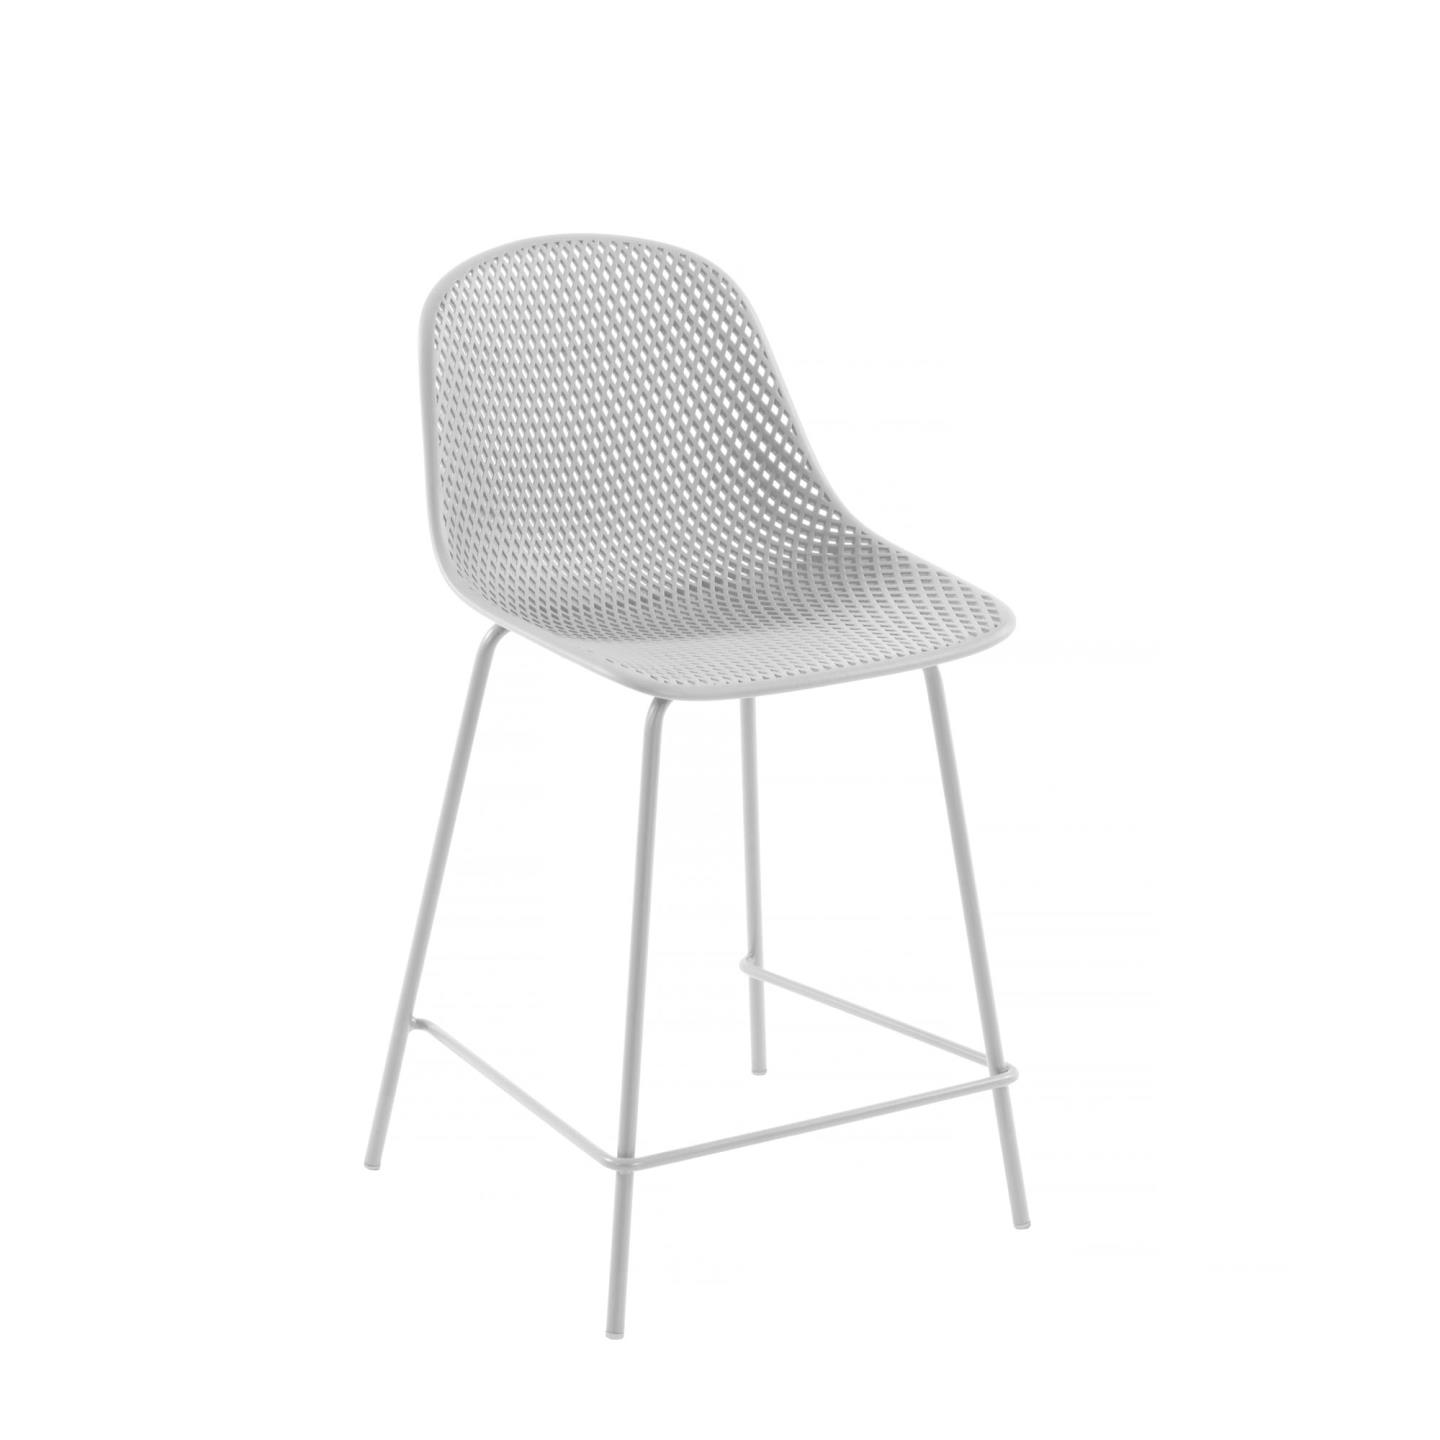 LAFORMA Quinby udendørs barstol, m. ryglæn og fodstøtte - hvid polypropylen og stål